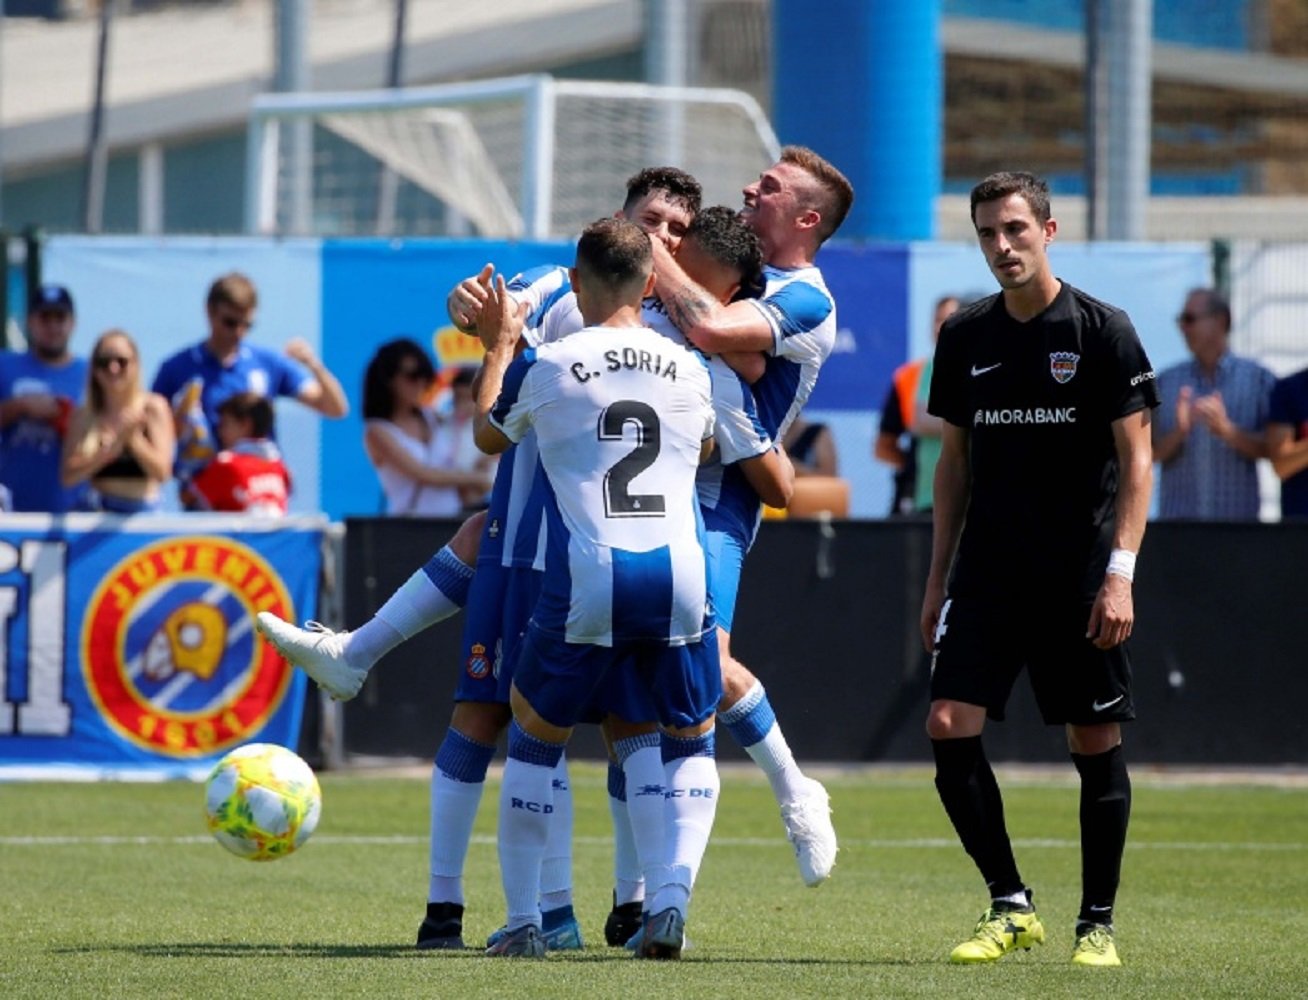 El futbolista de l'Espanyol B Carles Soria s'estrena amb el gol de la jornada